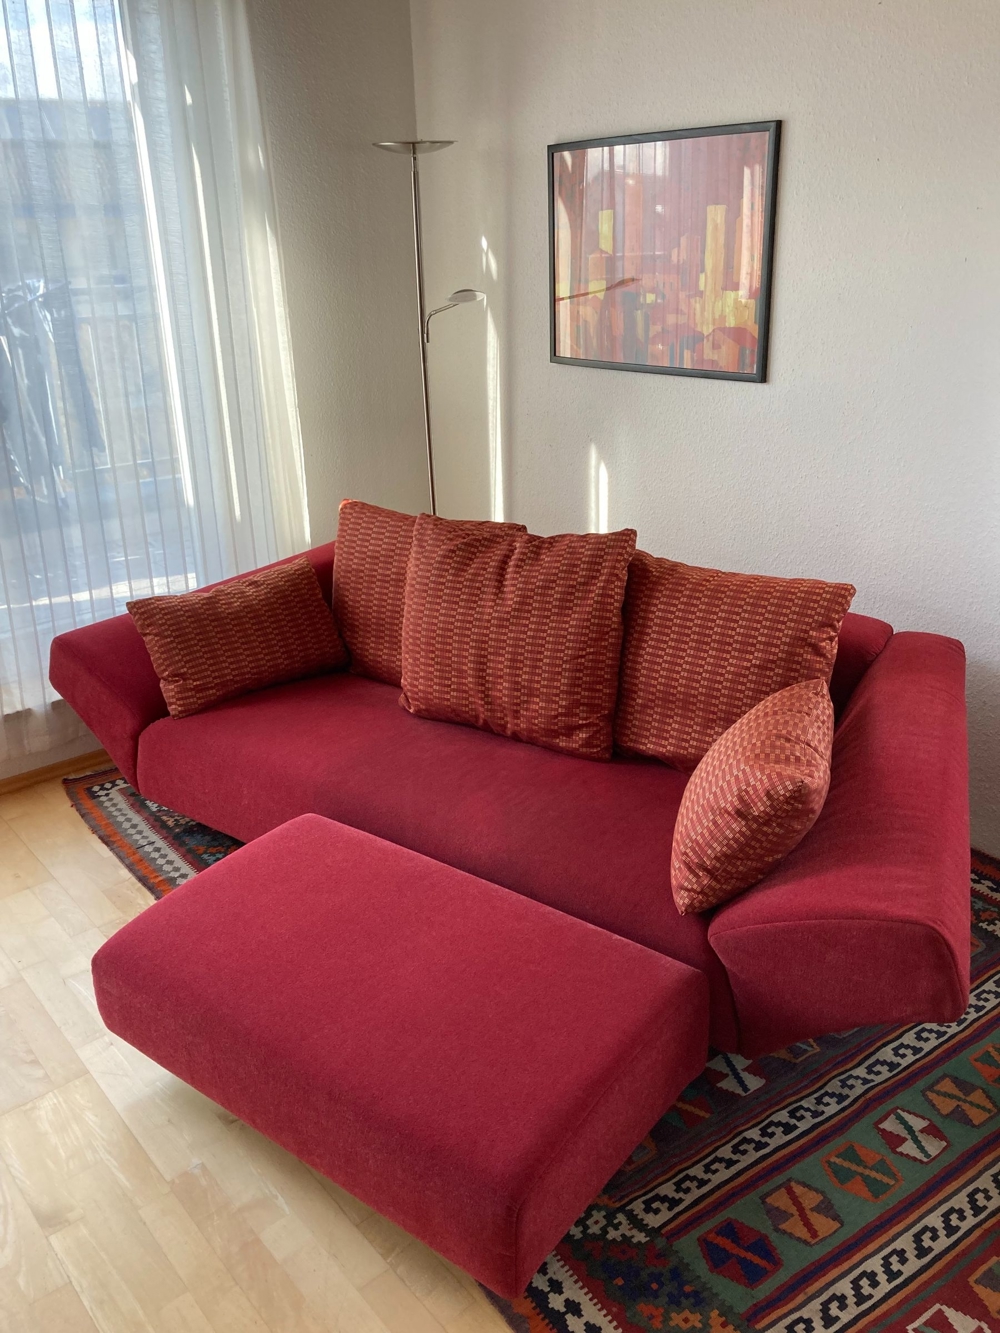 Sofa - ausgefallener, sehr bequemer, rubinroter Rolf Benz Designer Dreisitzer - kaum benutzt !